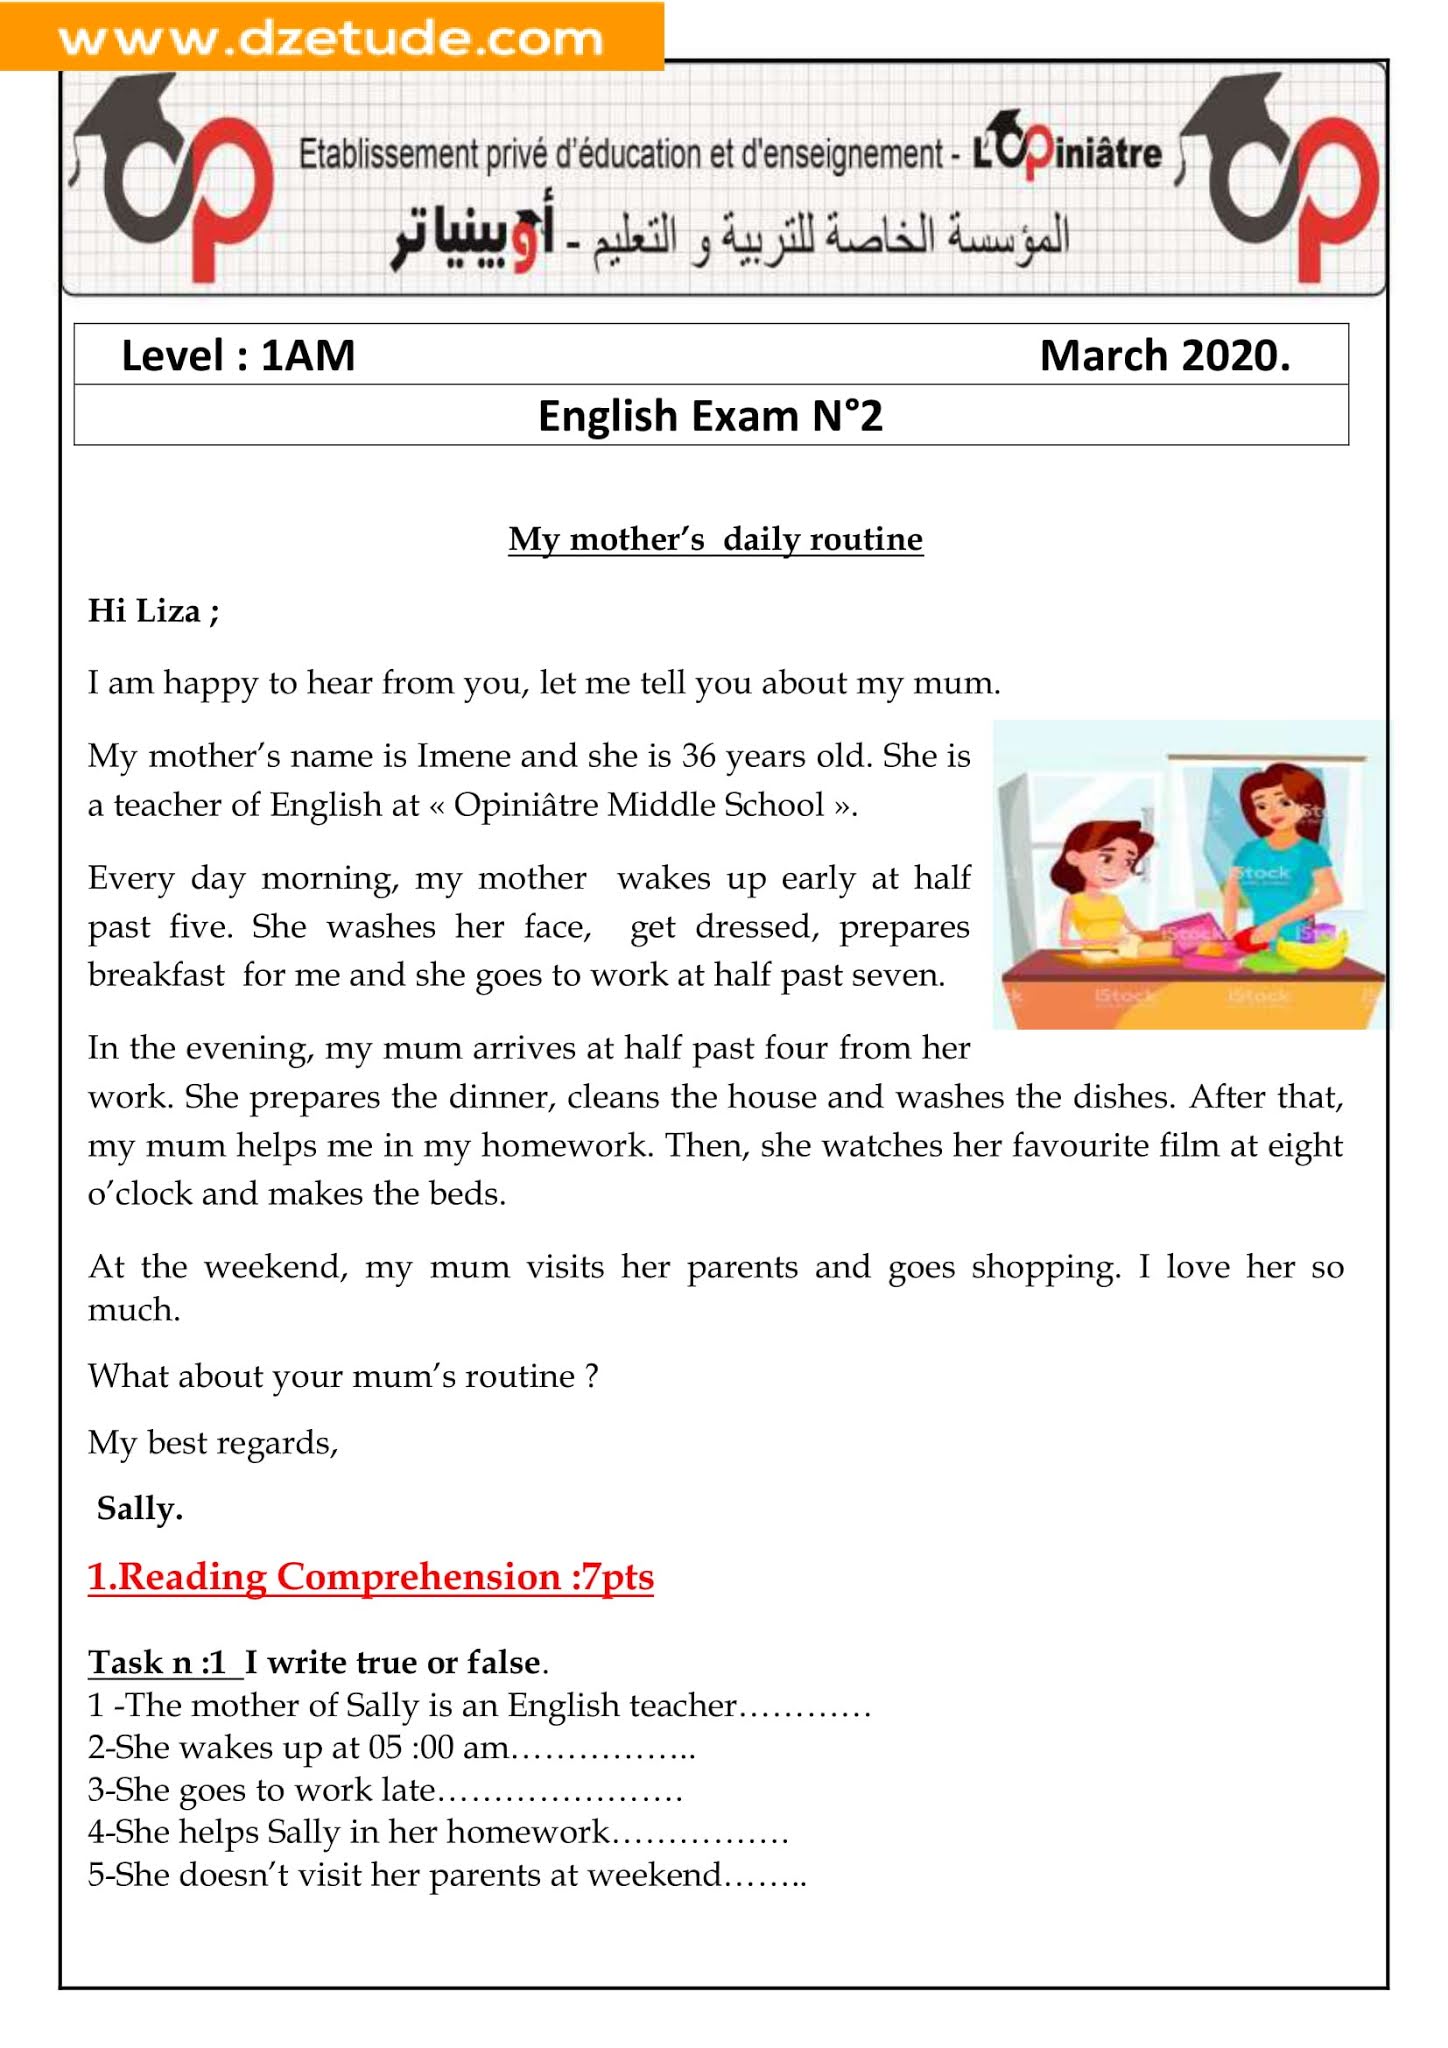 إختبار اللغة الإنجليزية الفصل الثاني للسنة الأولى متوسط - الجيل الثاني نموذج 6